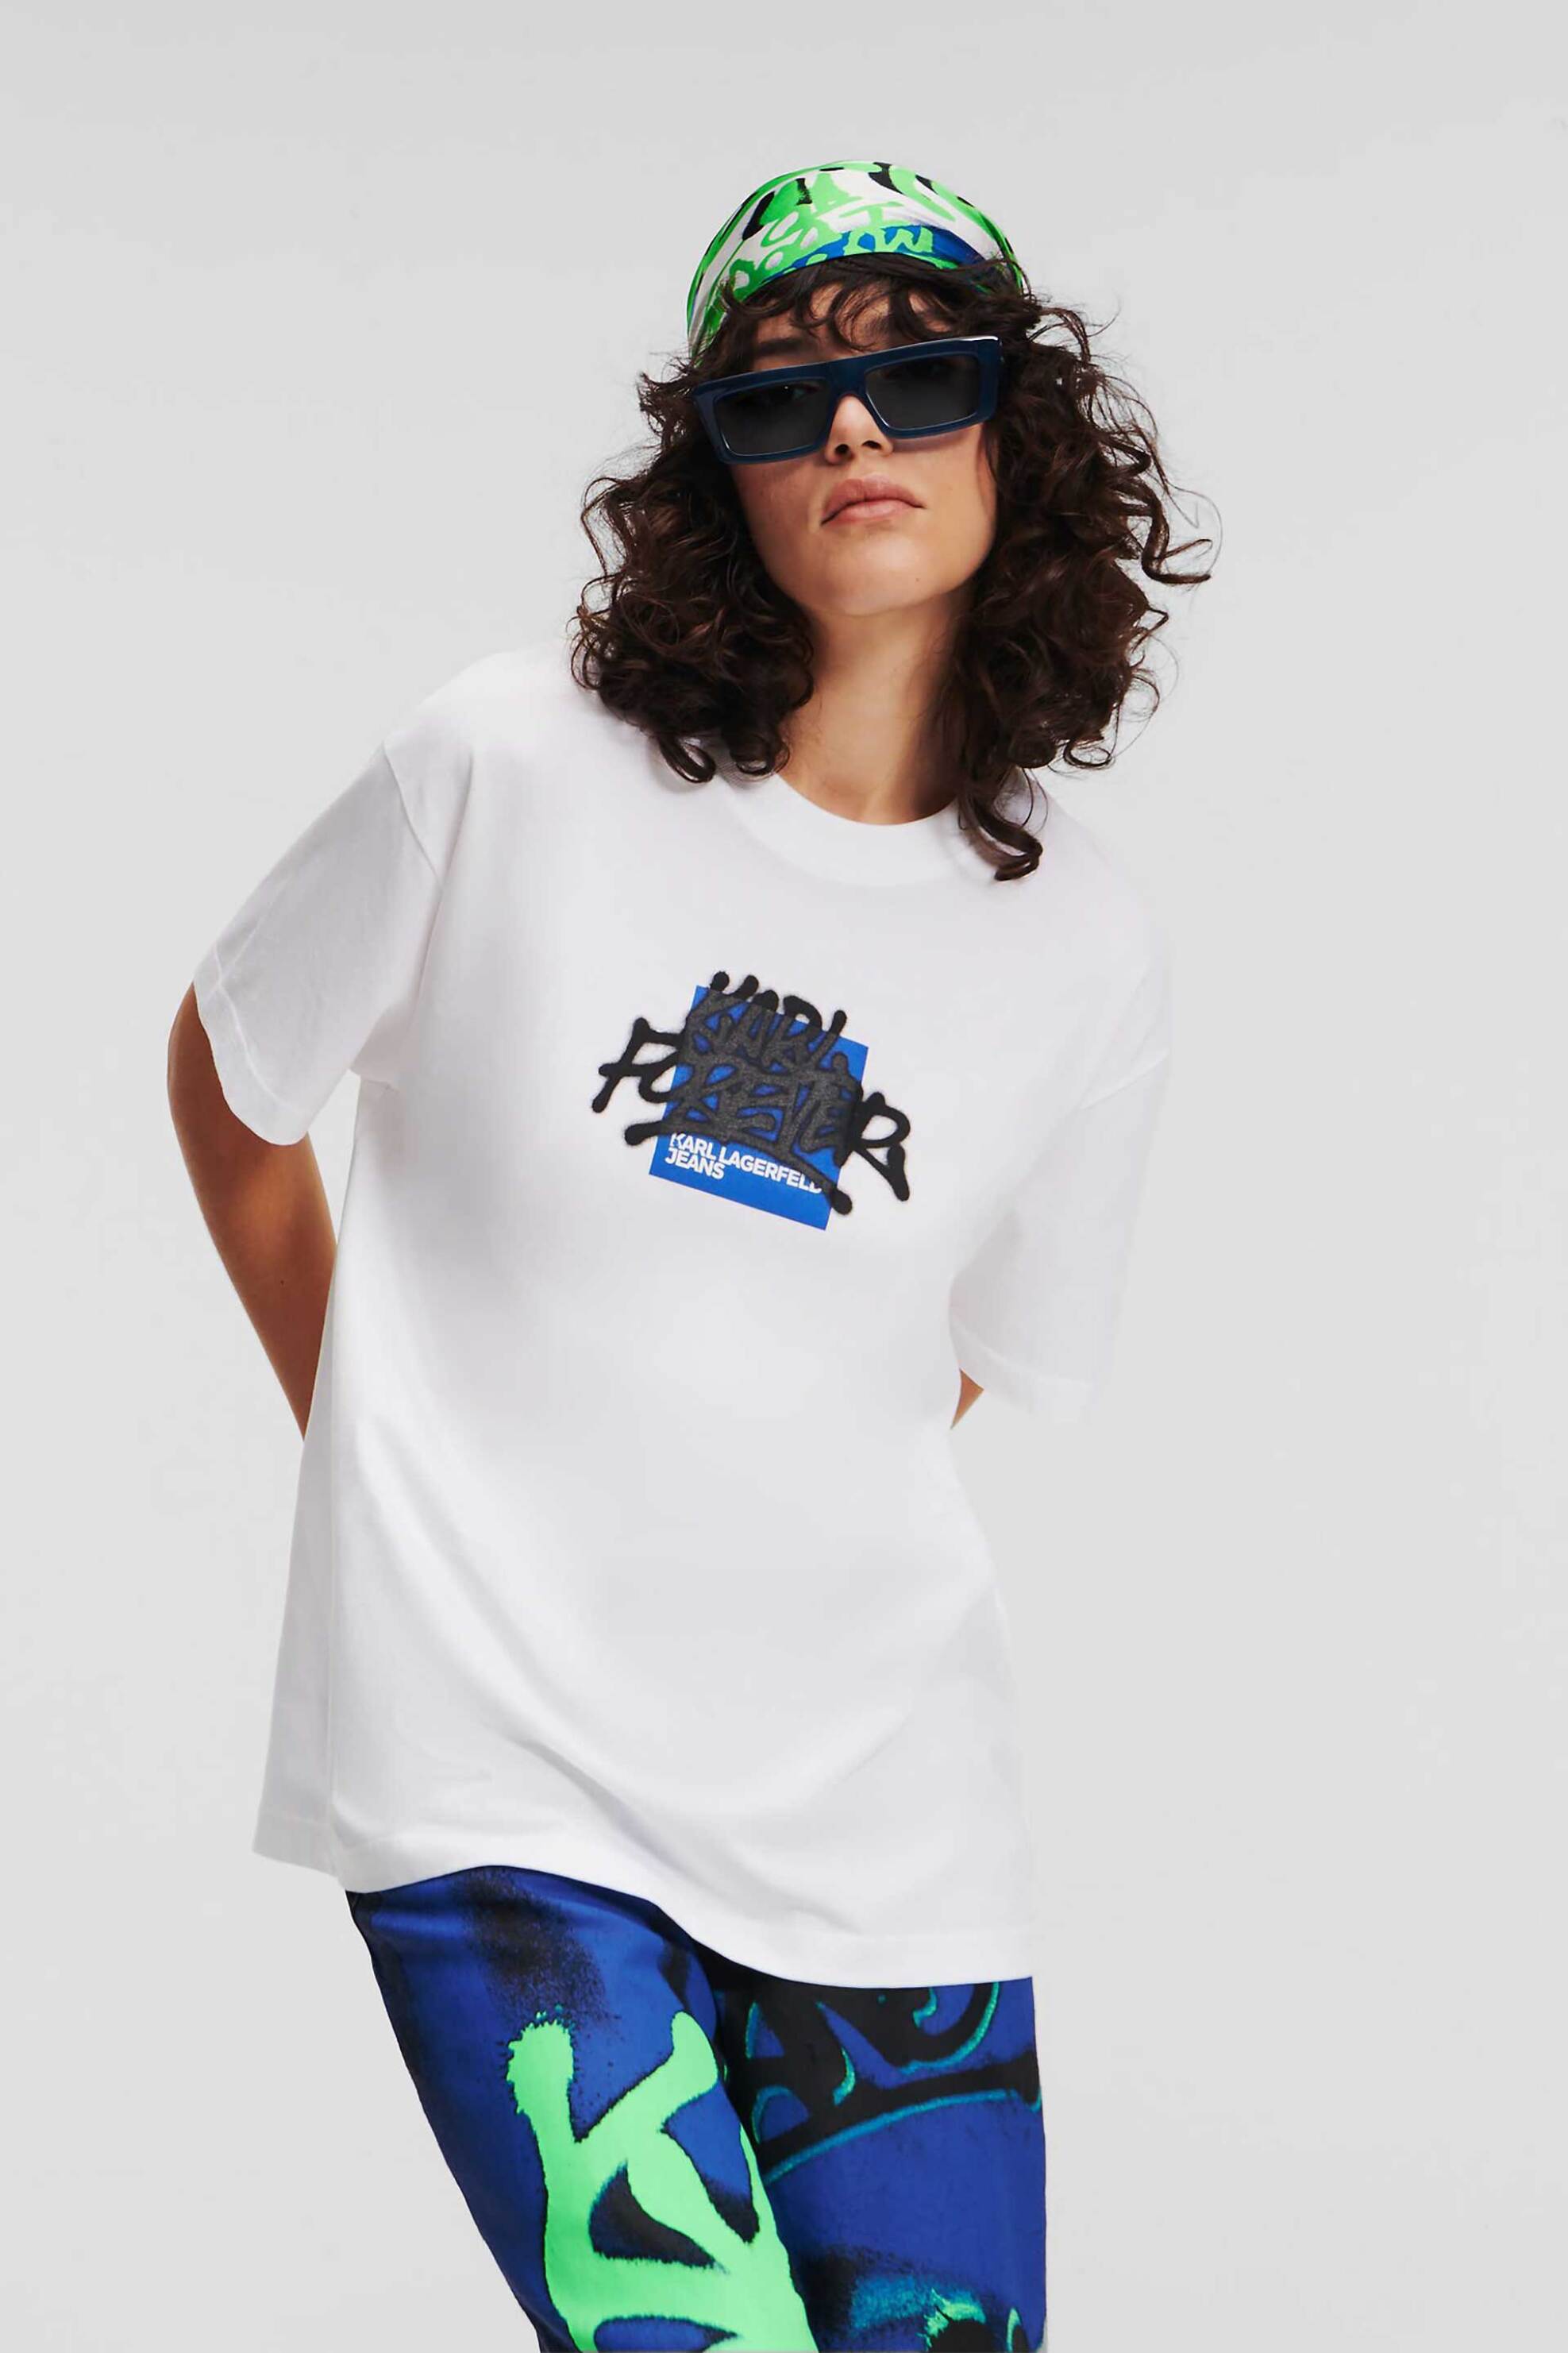 Γυναικεία Ρούχα & Αξεσουάρ > Γυναικεία Ρούχα > Γυναικεία Τοπ > Γυναικεία T-Shirts Karl Lagerfeld Jeans γυναικείο T-shirt μονόχρωμο "Klj X Crapule2000" - 241J1711 Λευκό